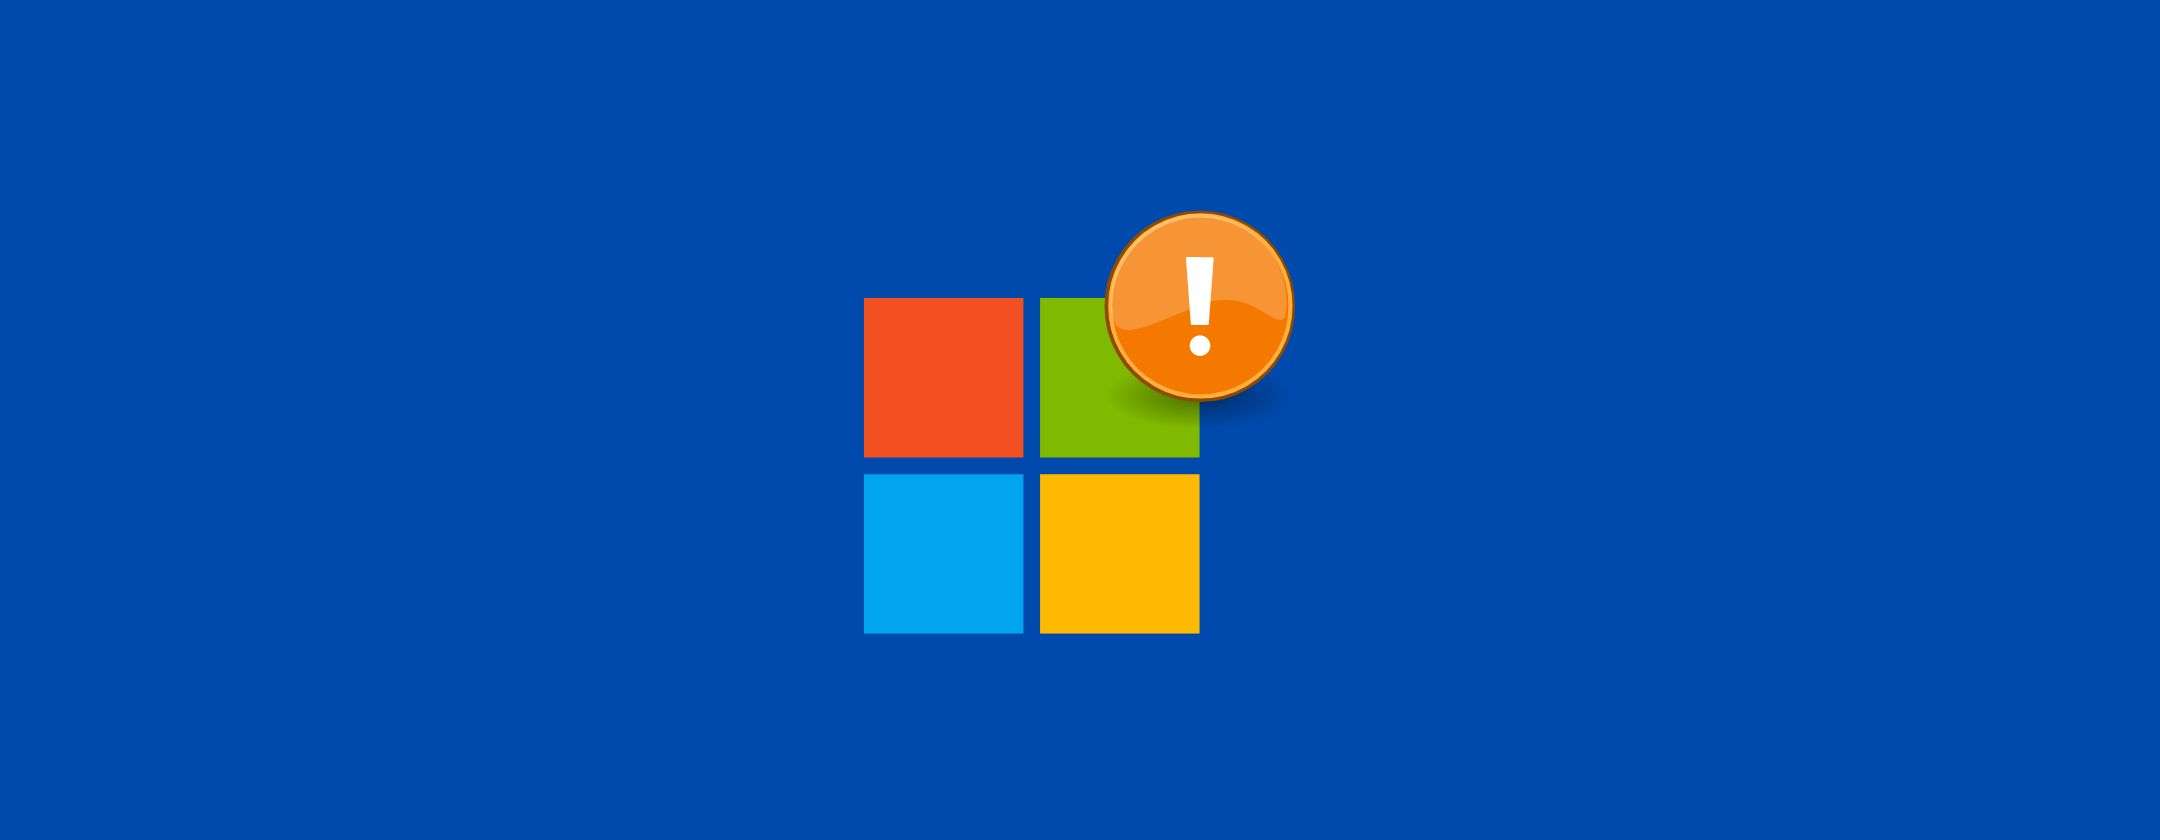 Microsoft Office mette in pericolo tutti gli utenti: come proteggersi